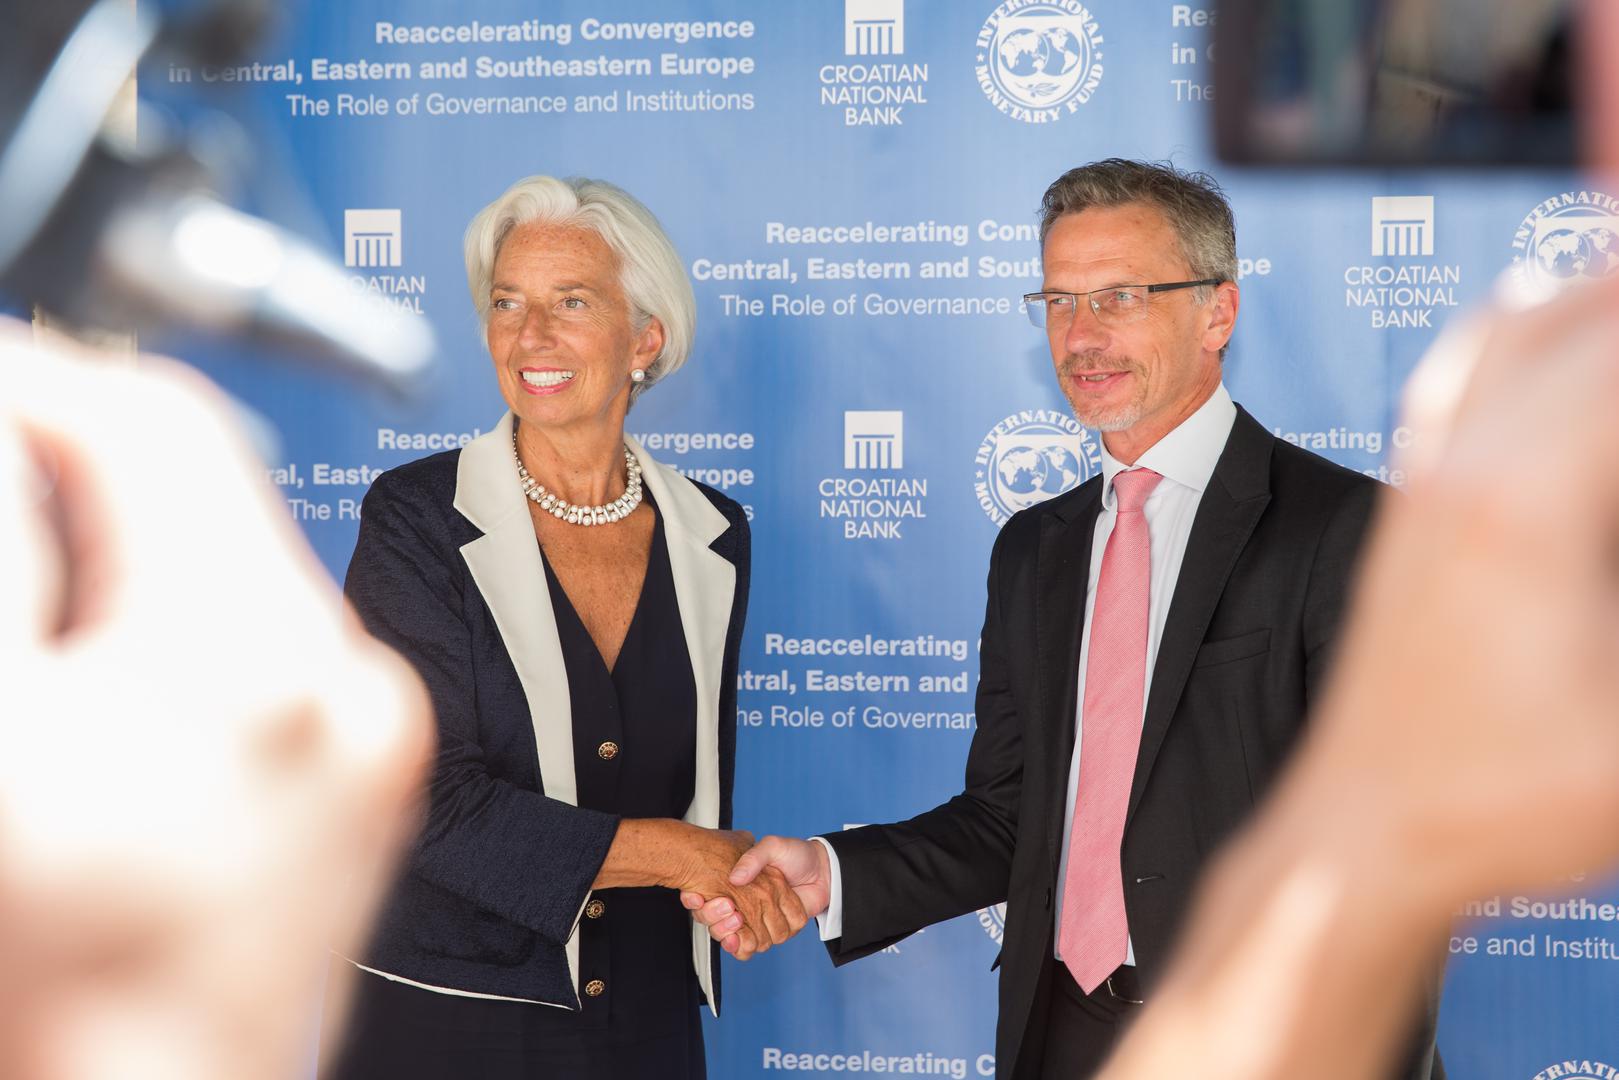 Christine Lagarde: Ulazak u eurozonu je ponajprije odluka zemlje